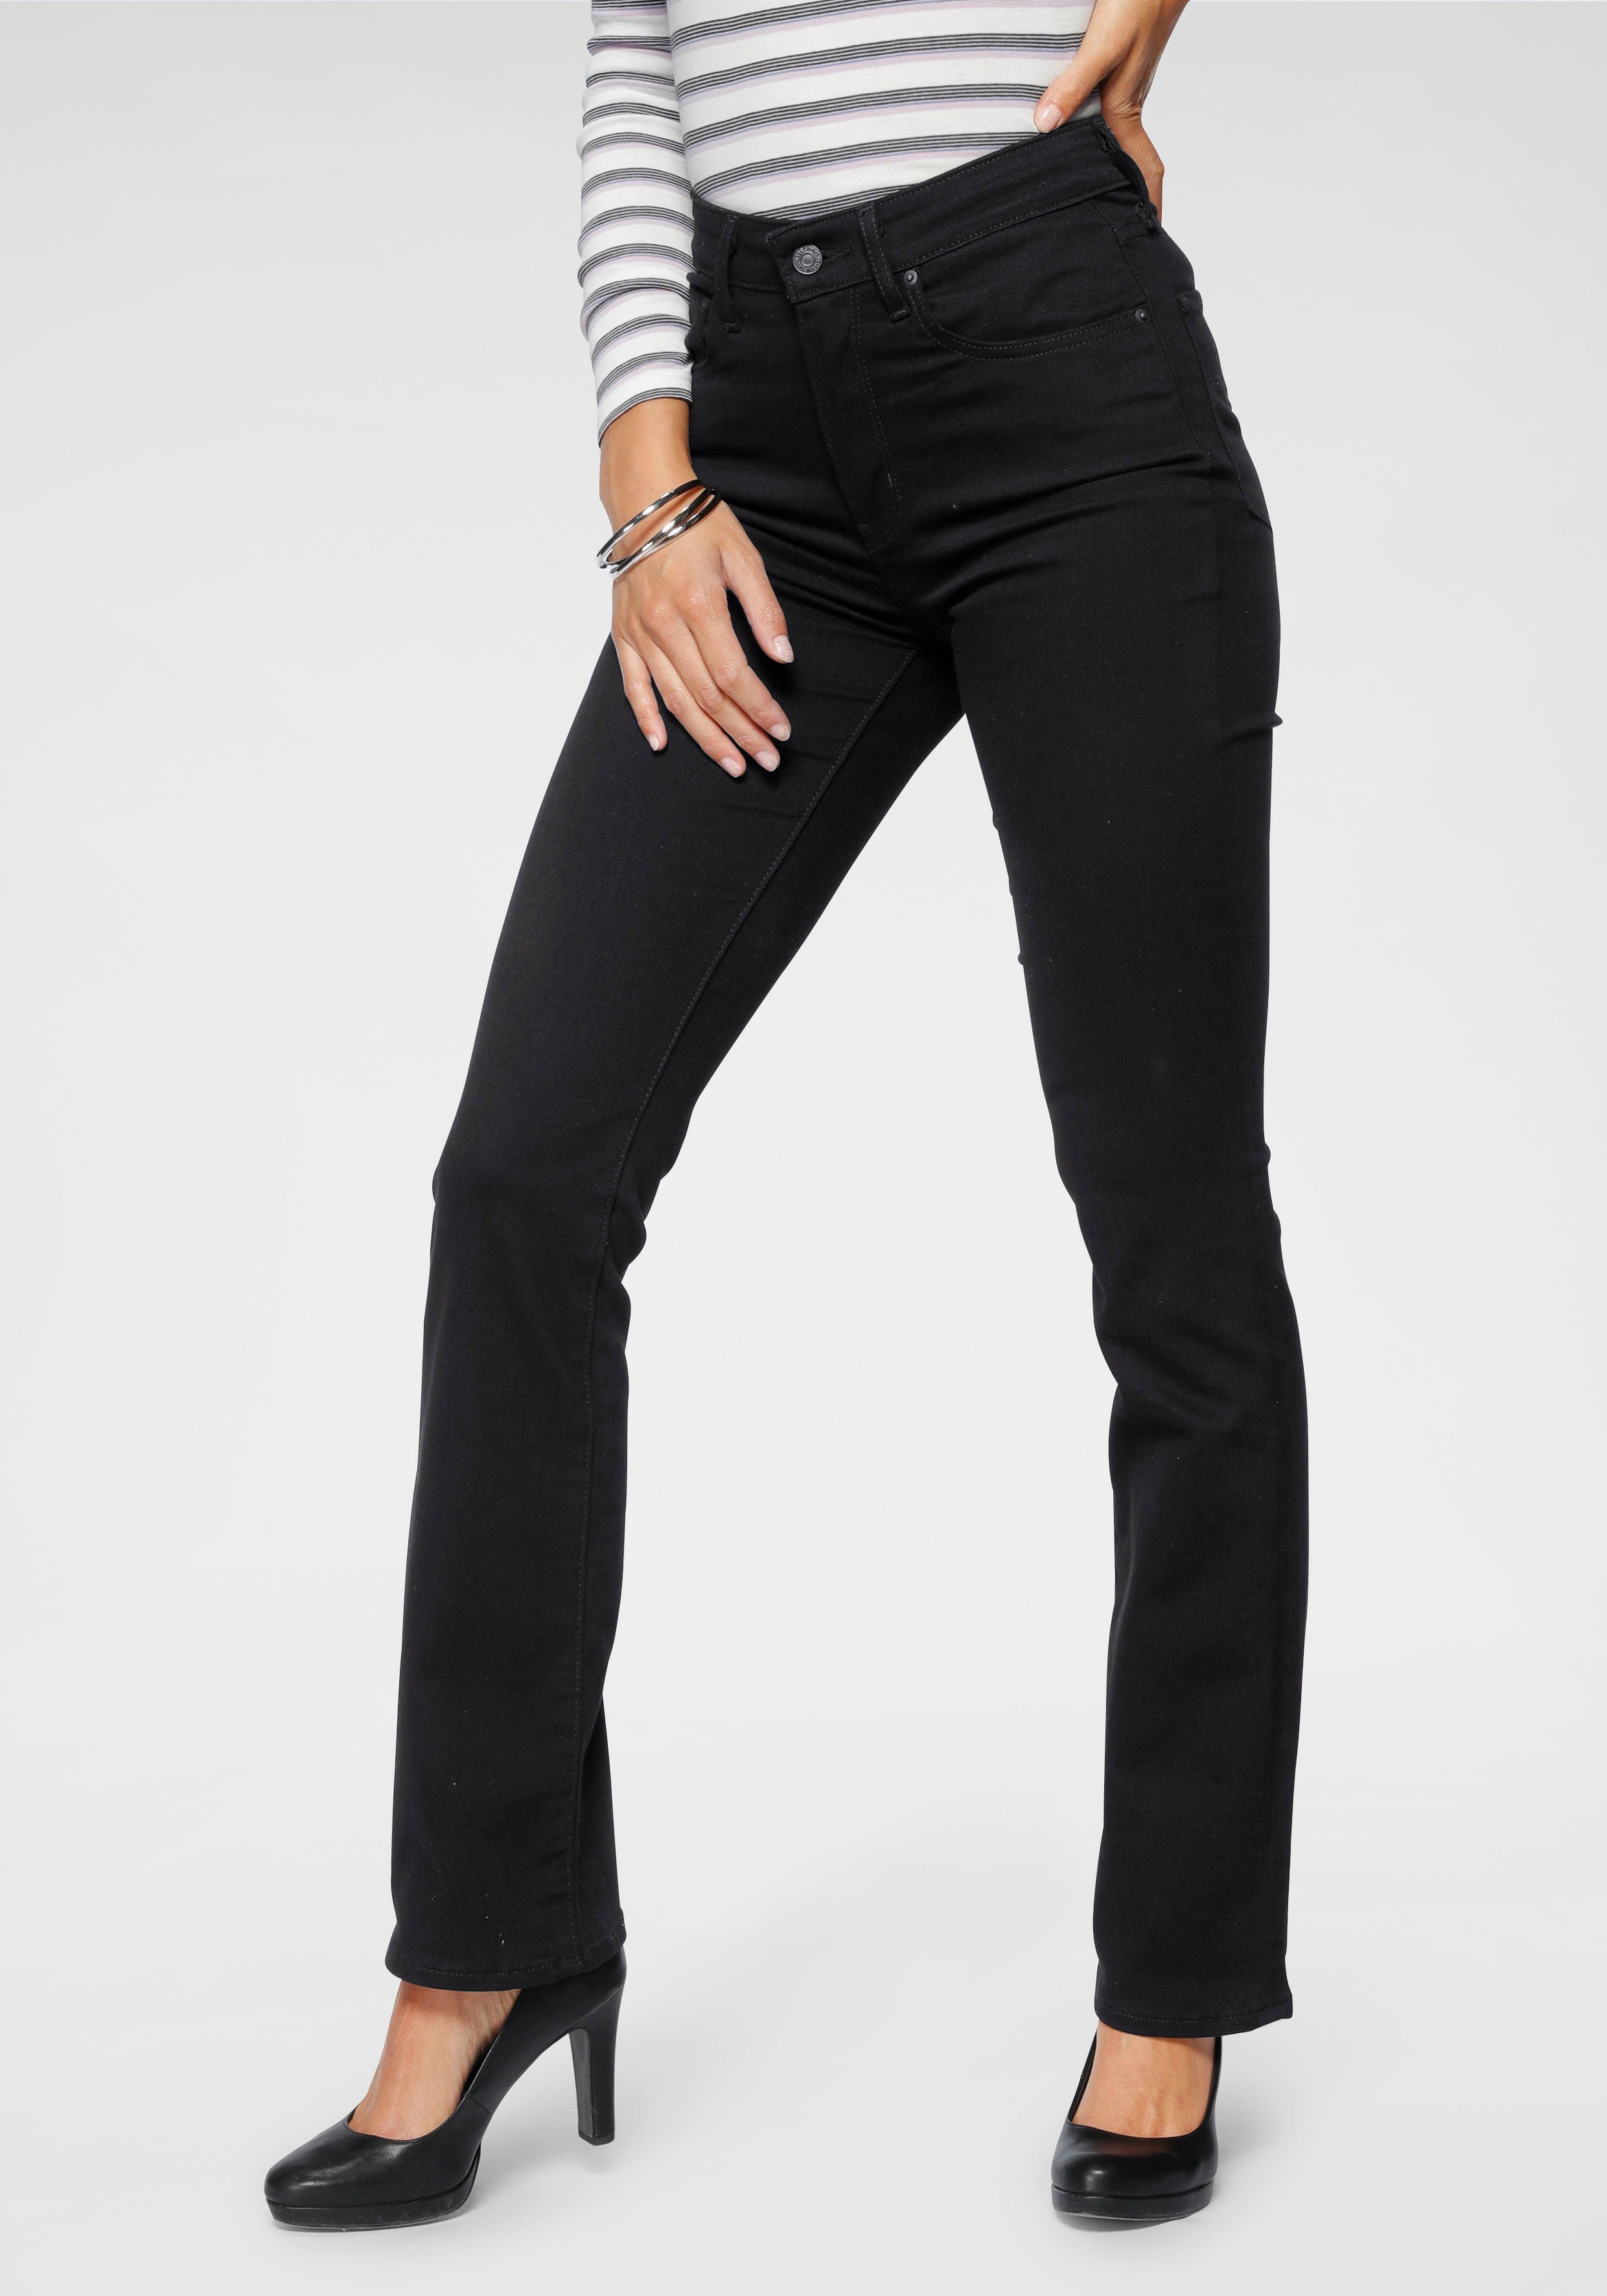 Schwarze Jeans online kaufen | OTTO